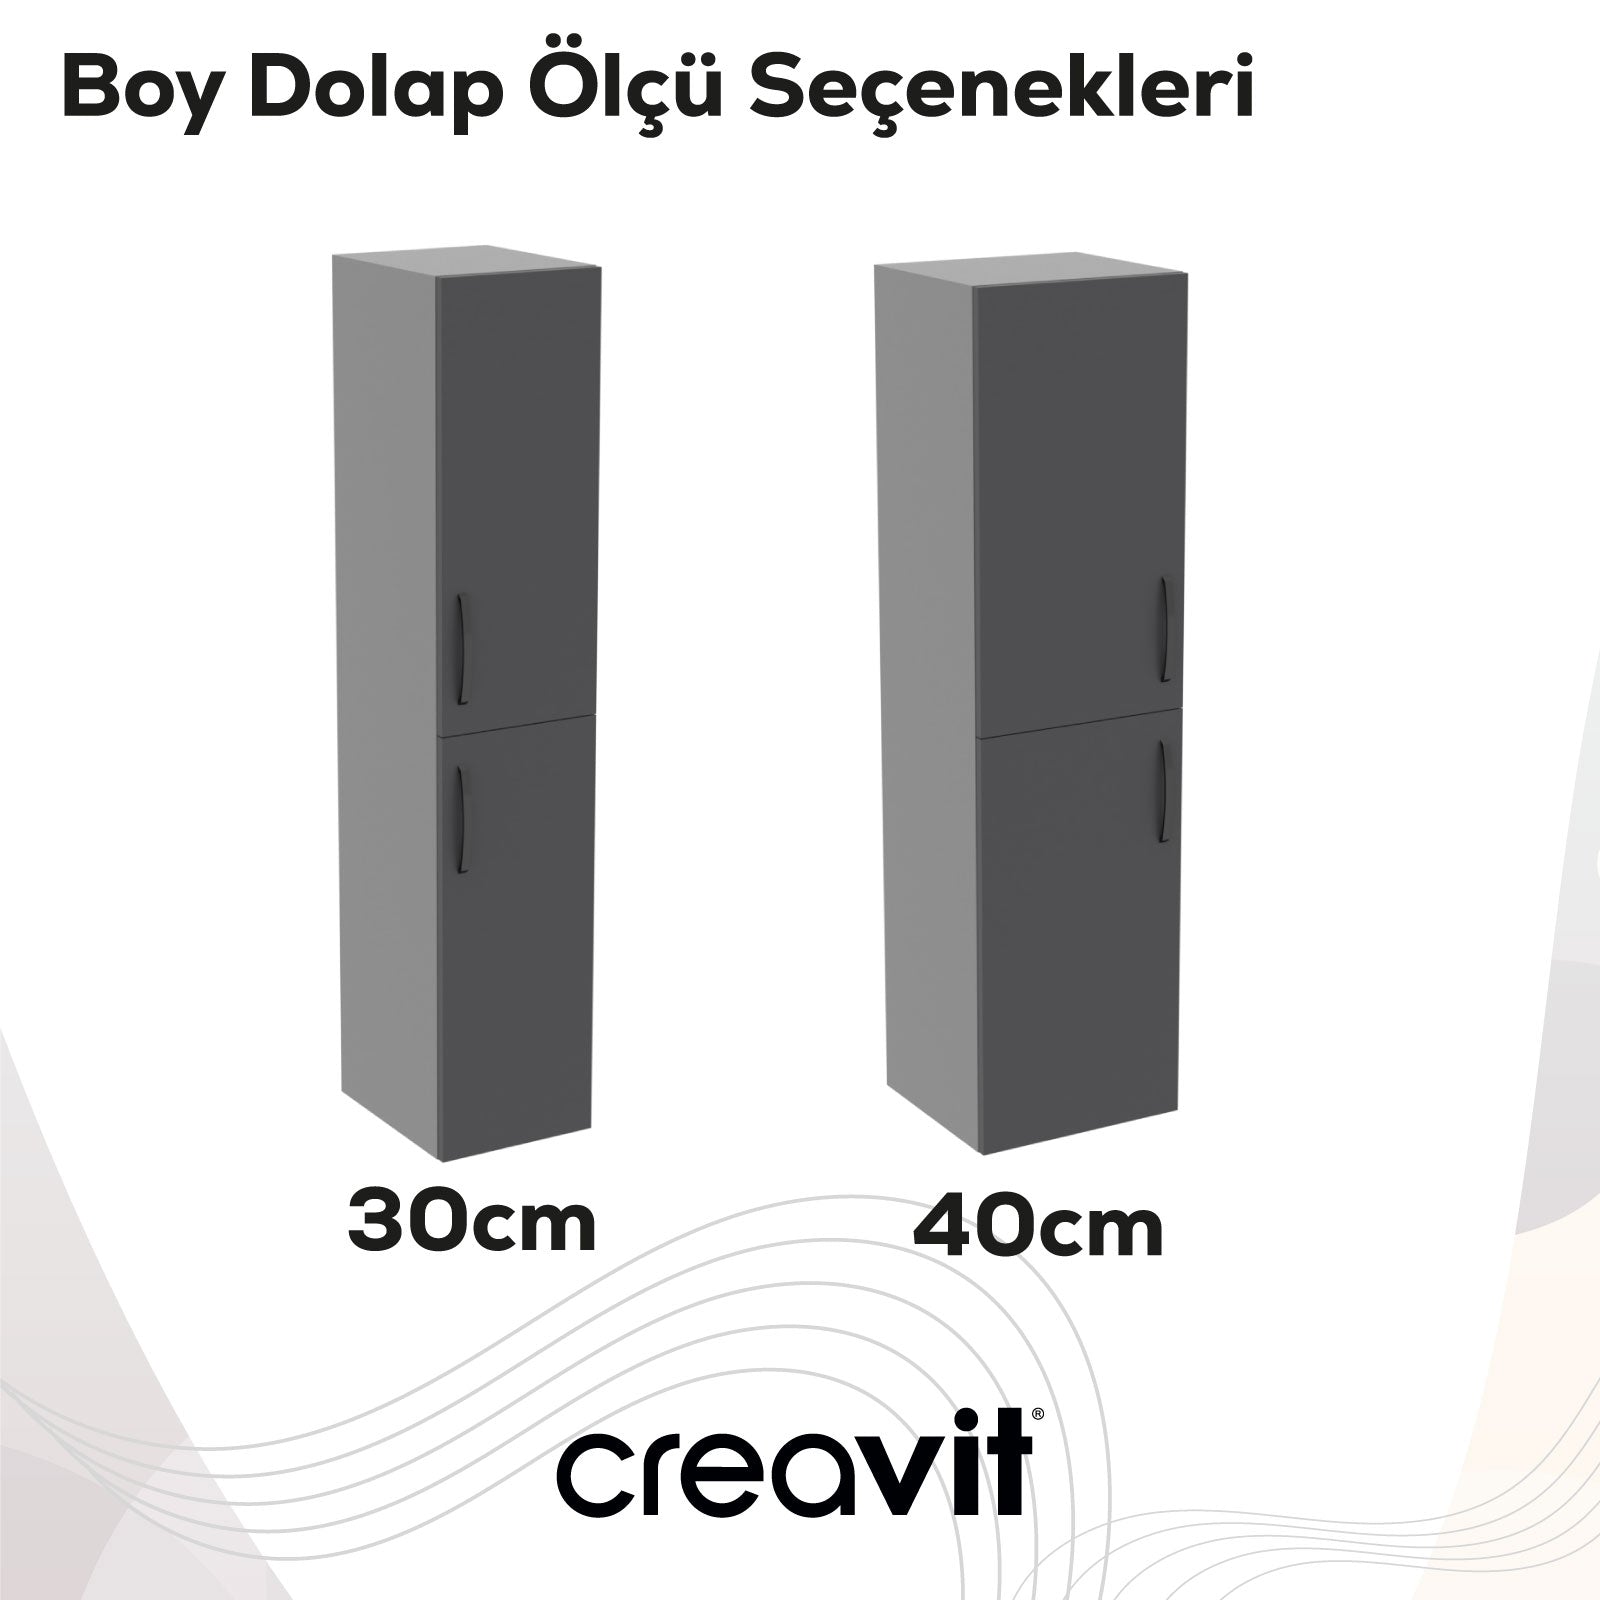 D10 40 cm Sol Boy Dolabı Dafne Melamin Gövde Lake Kapak - Creavit | Banyo Bu Tarafta